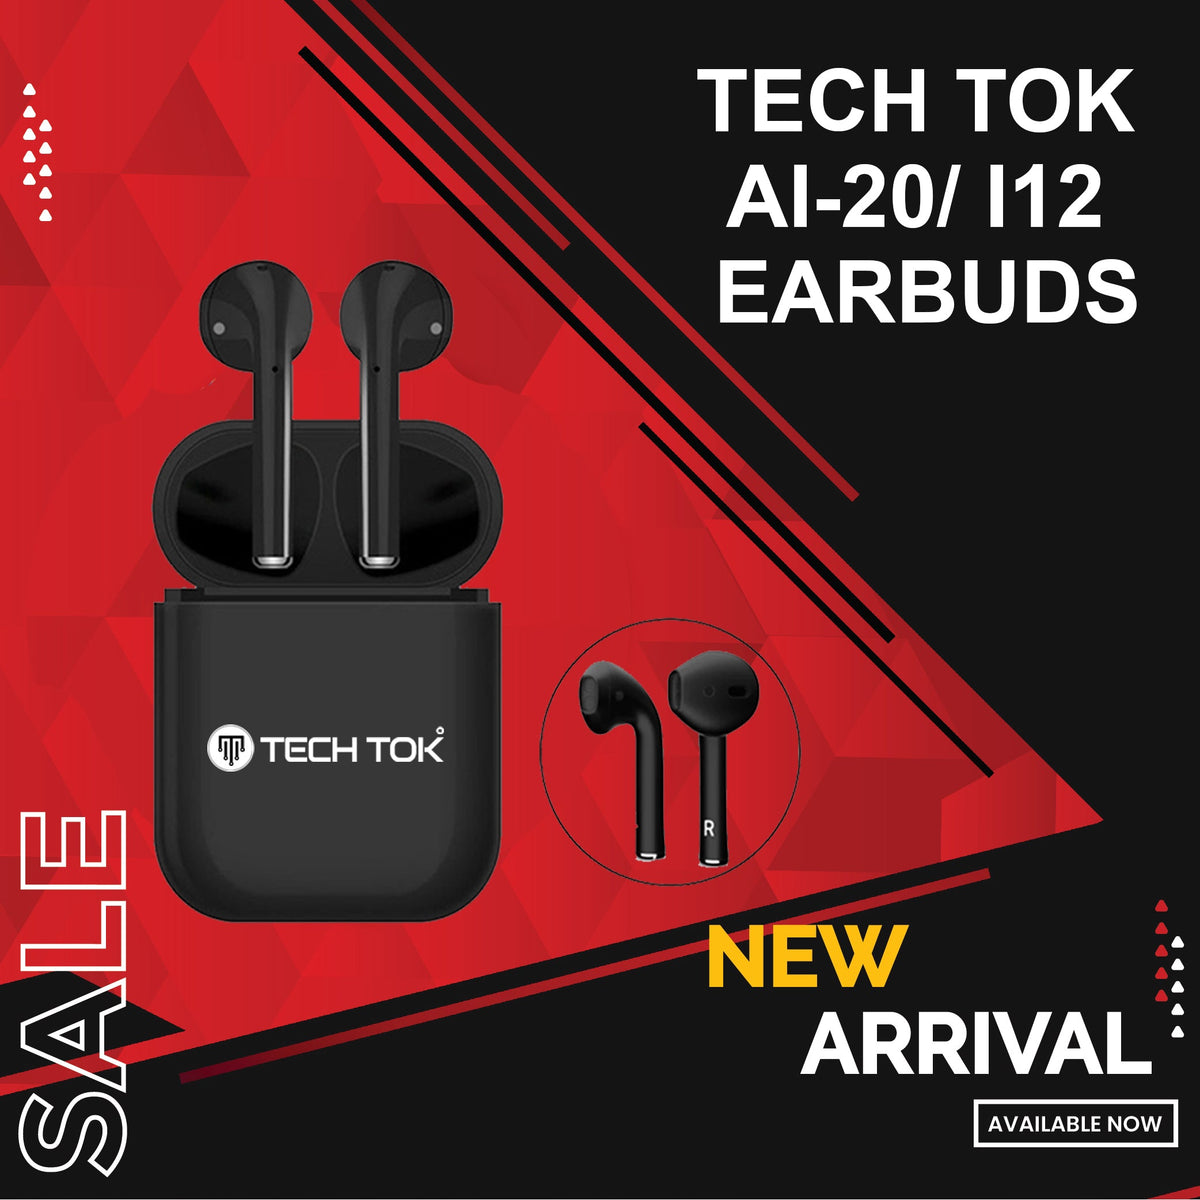 Tech Tok TWS Wireless Bluetooth 5.0 AI-20/ i12 Earbuds